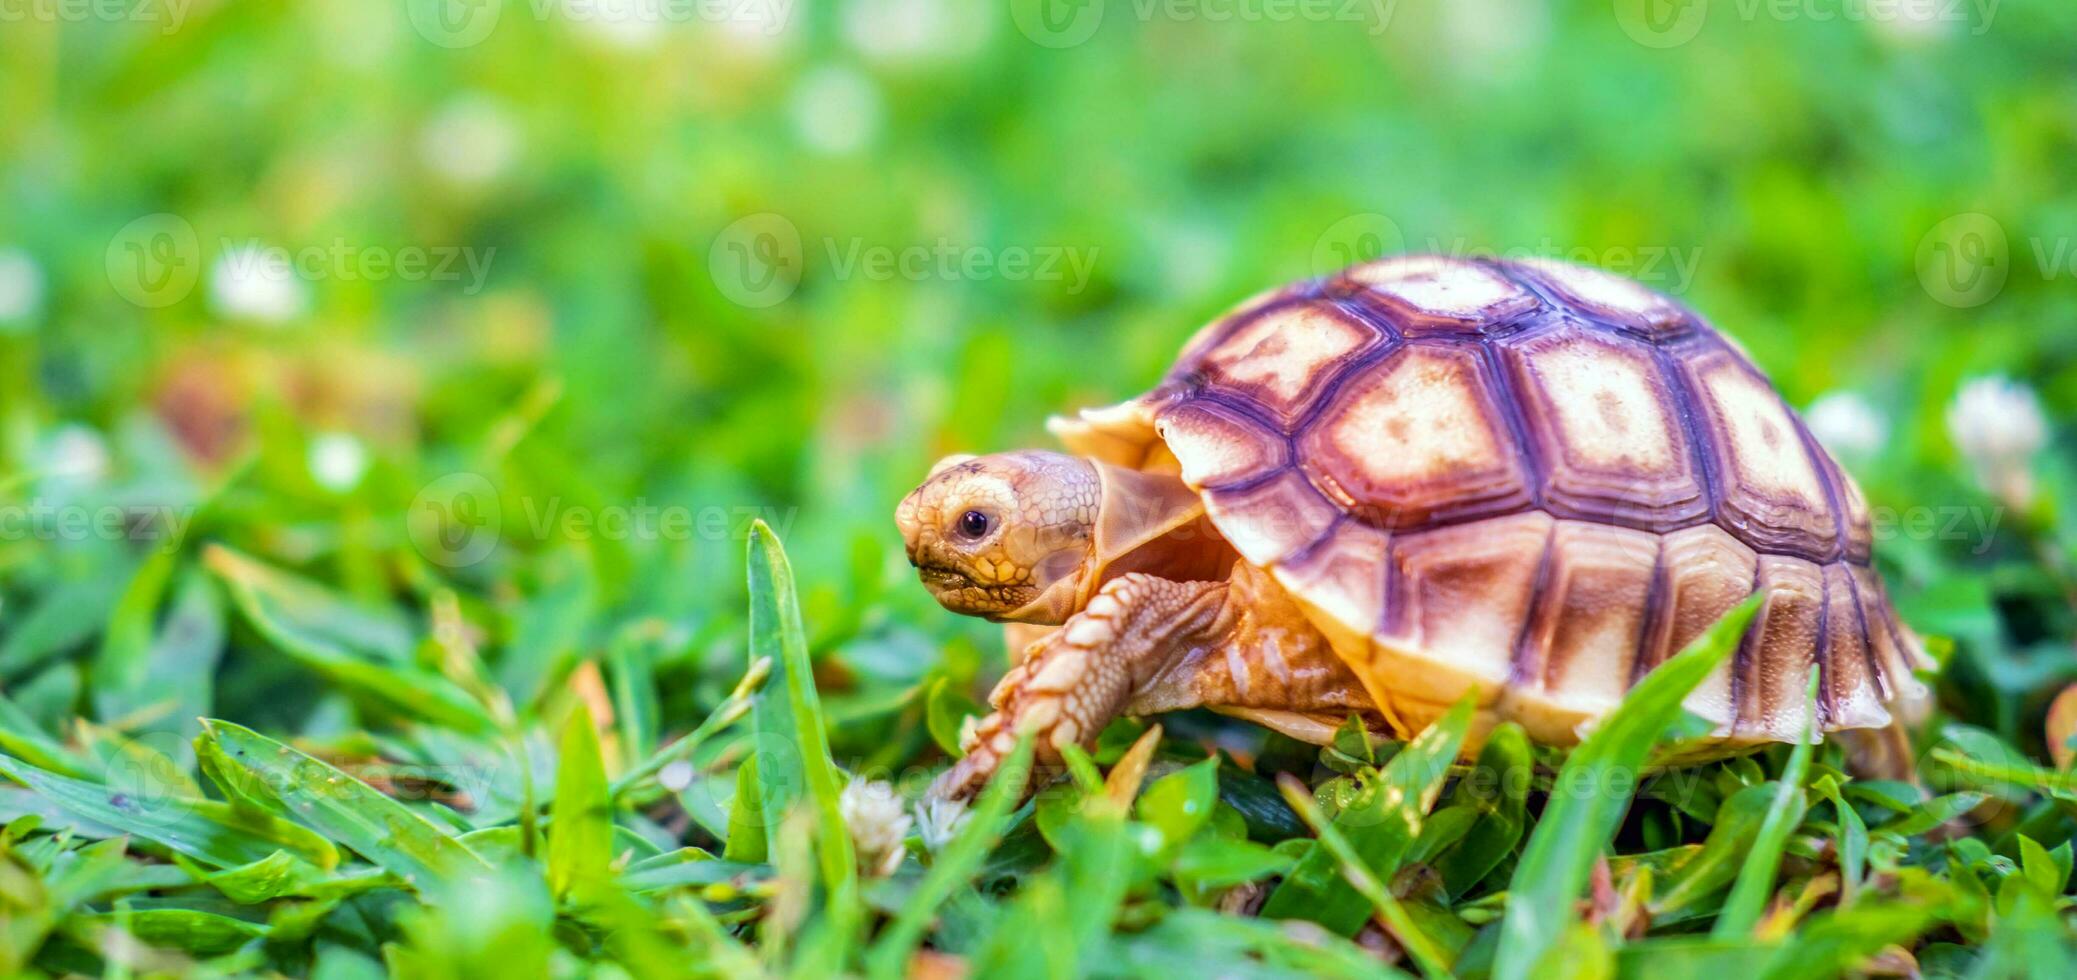 dichtbij omhoog van sulcata schildpad of Afrikaanse aangespoord schildpad geclassificeerd net zo een groot schildpad in natuur, mooi baby Afrikaanse uitloper schildpadden foto